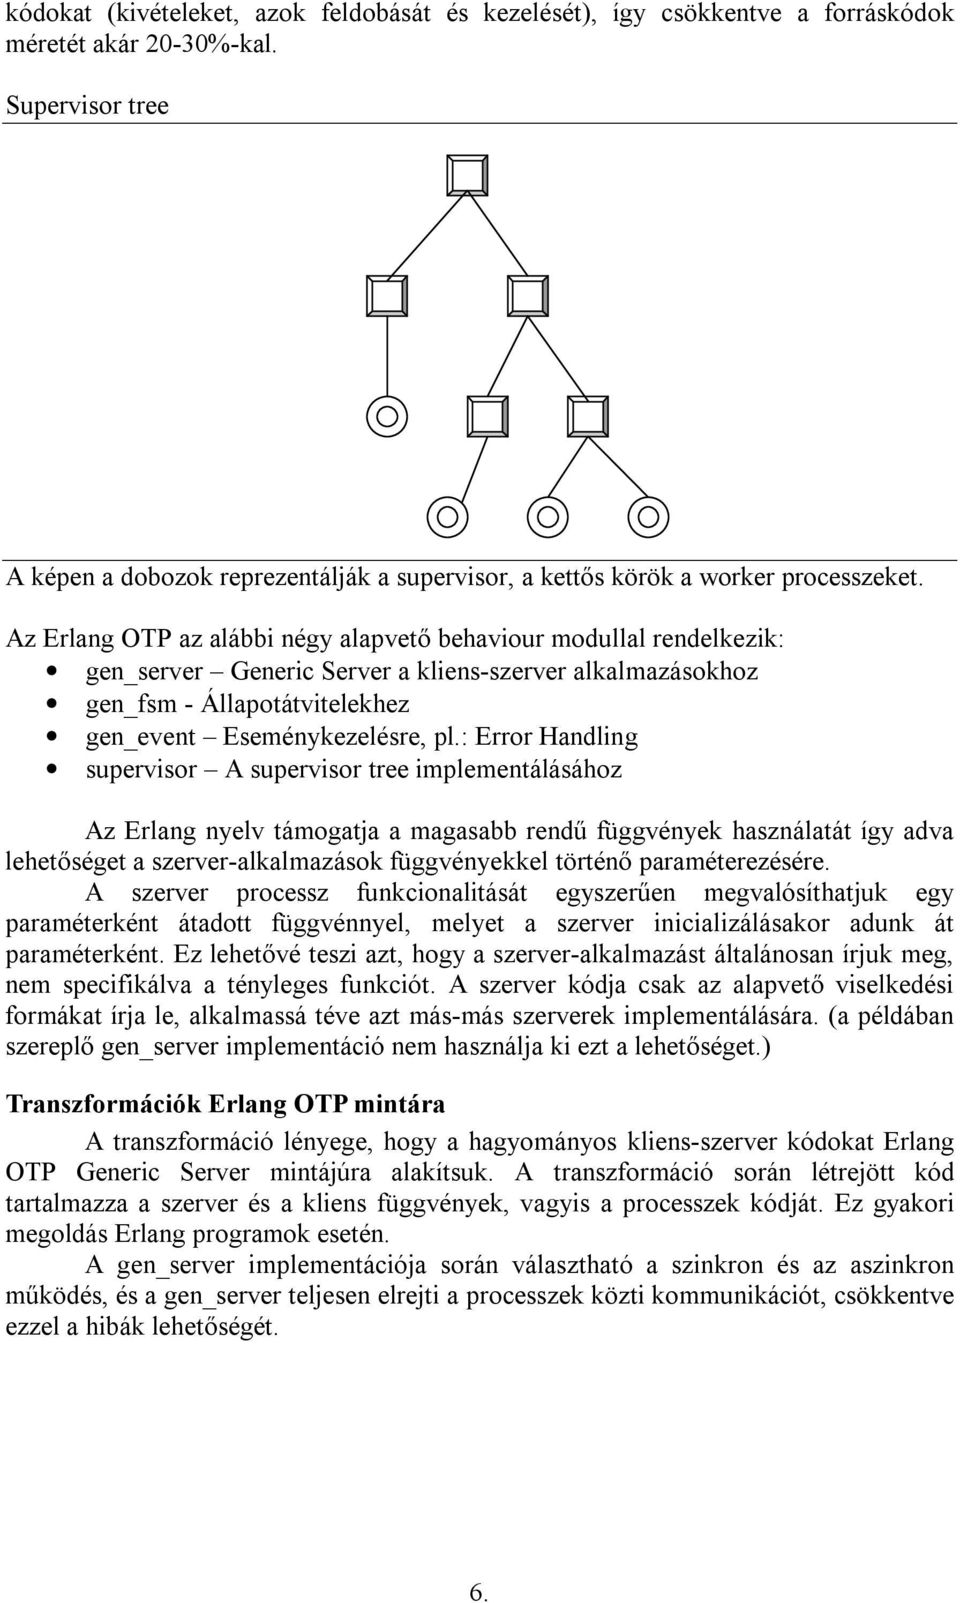 Az Erlang OTP az alábbi négy alapvető behaviour modullal rendelkezik: gen_server Generic Server a kliens-szerver alkalmazásokhoz gen_fsm - Állapotátvitelekhez gen_event Eseménykezelésre, pl.